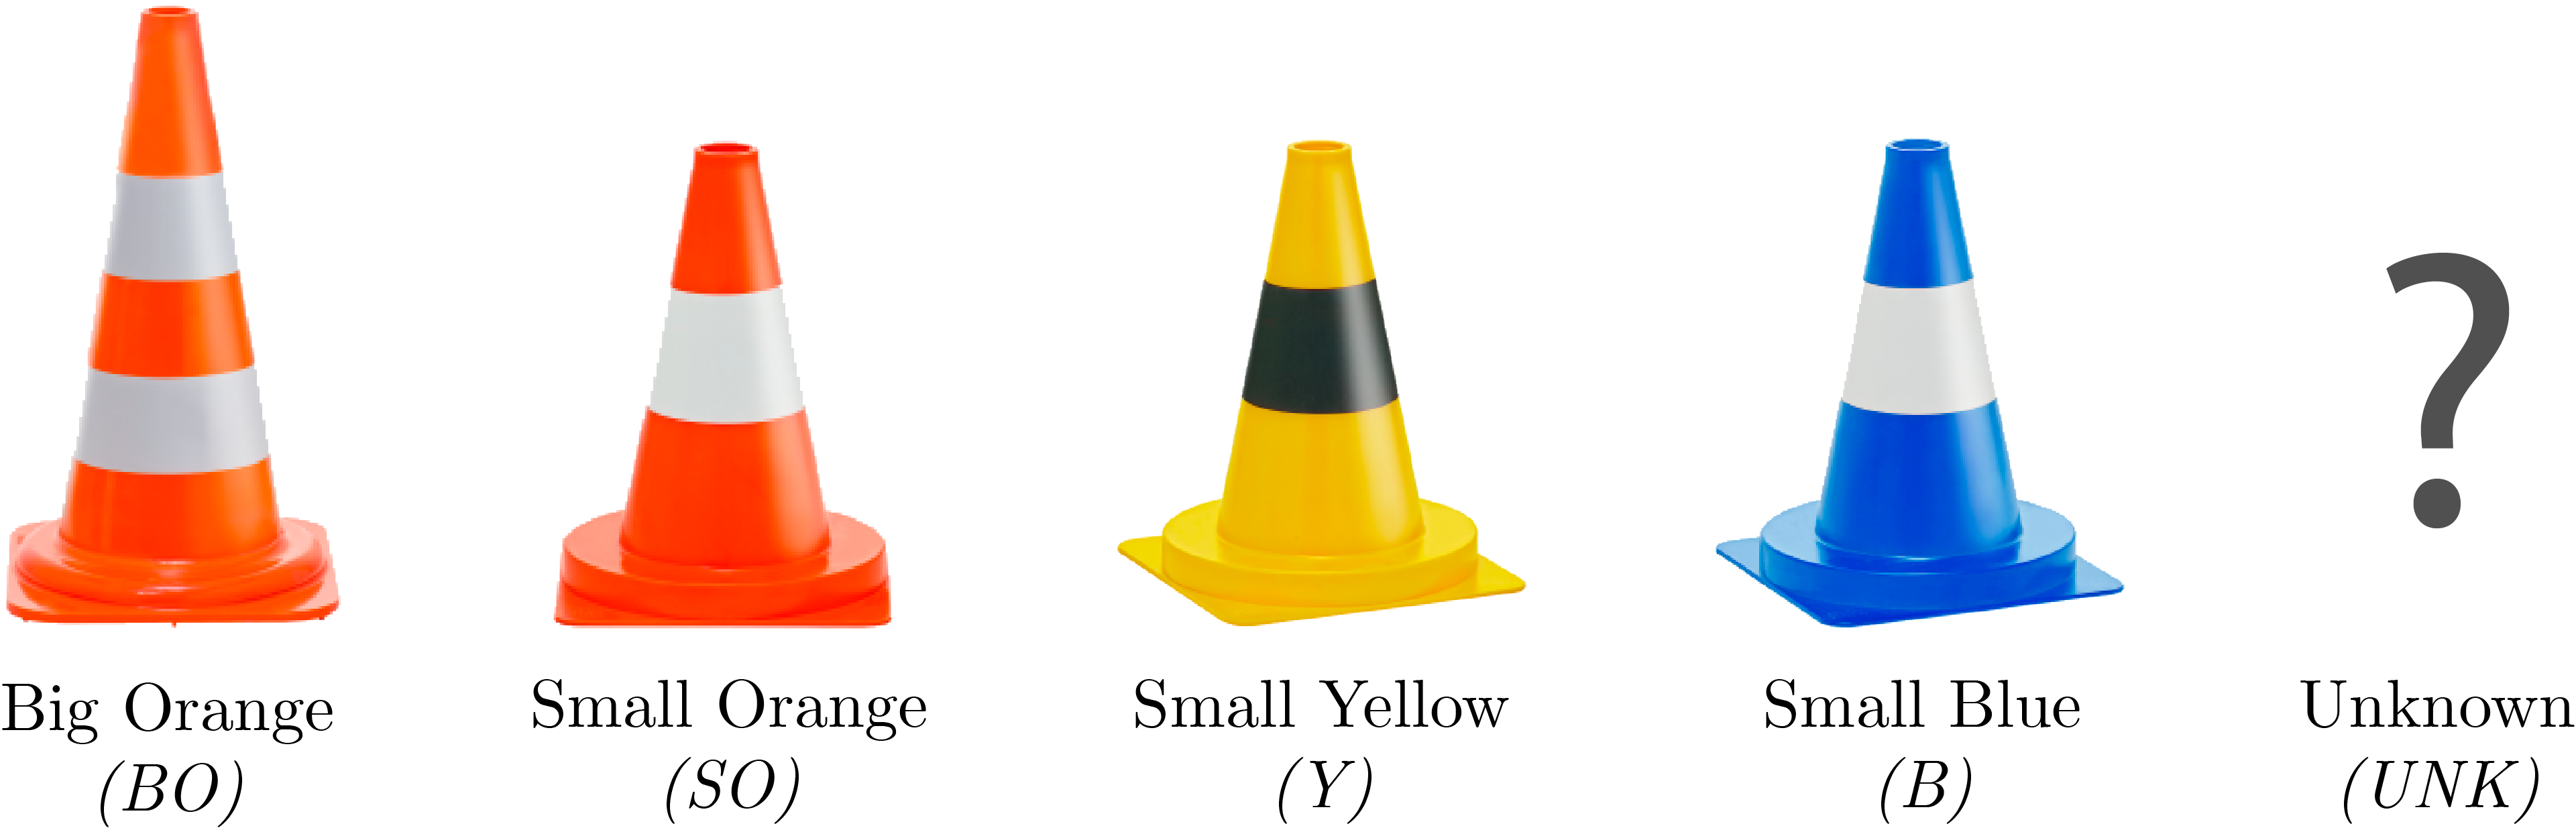 CCAT cone types